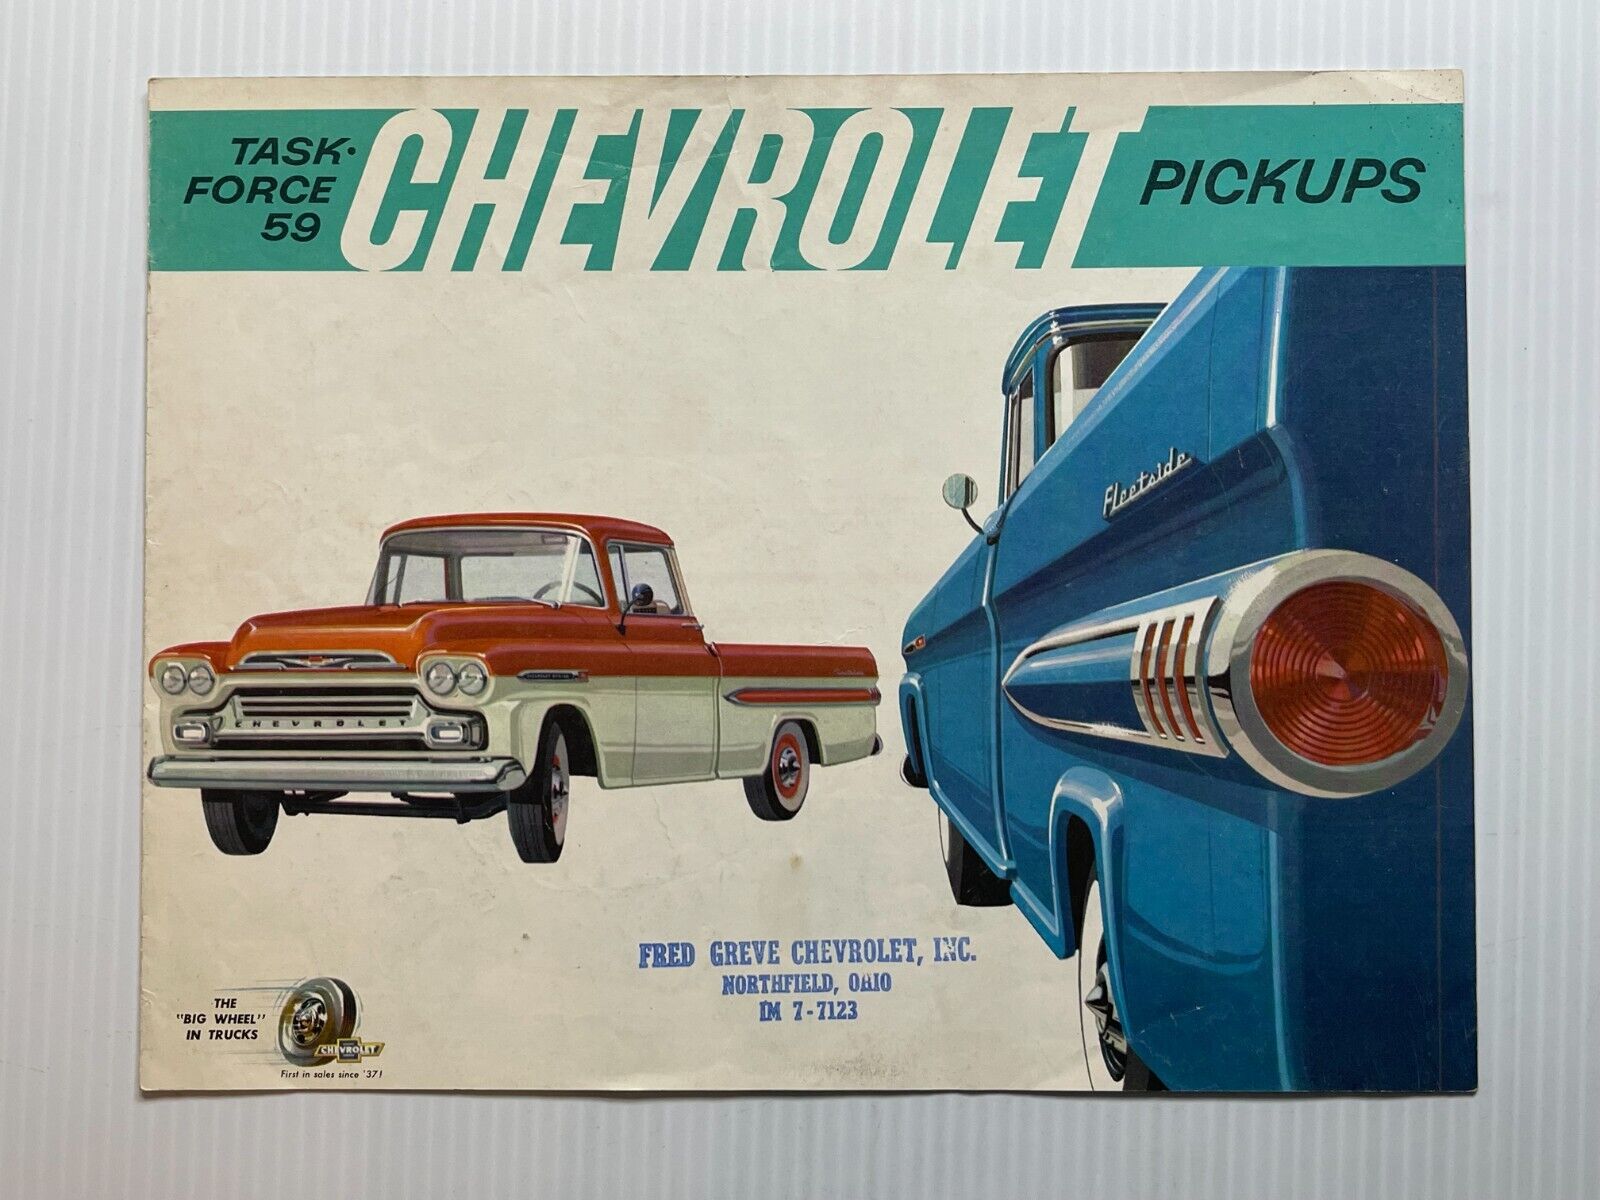 Vintage Original - 1959 Task Force 59 Chevy Pickup Trucks *Sales Brochure*